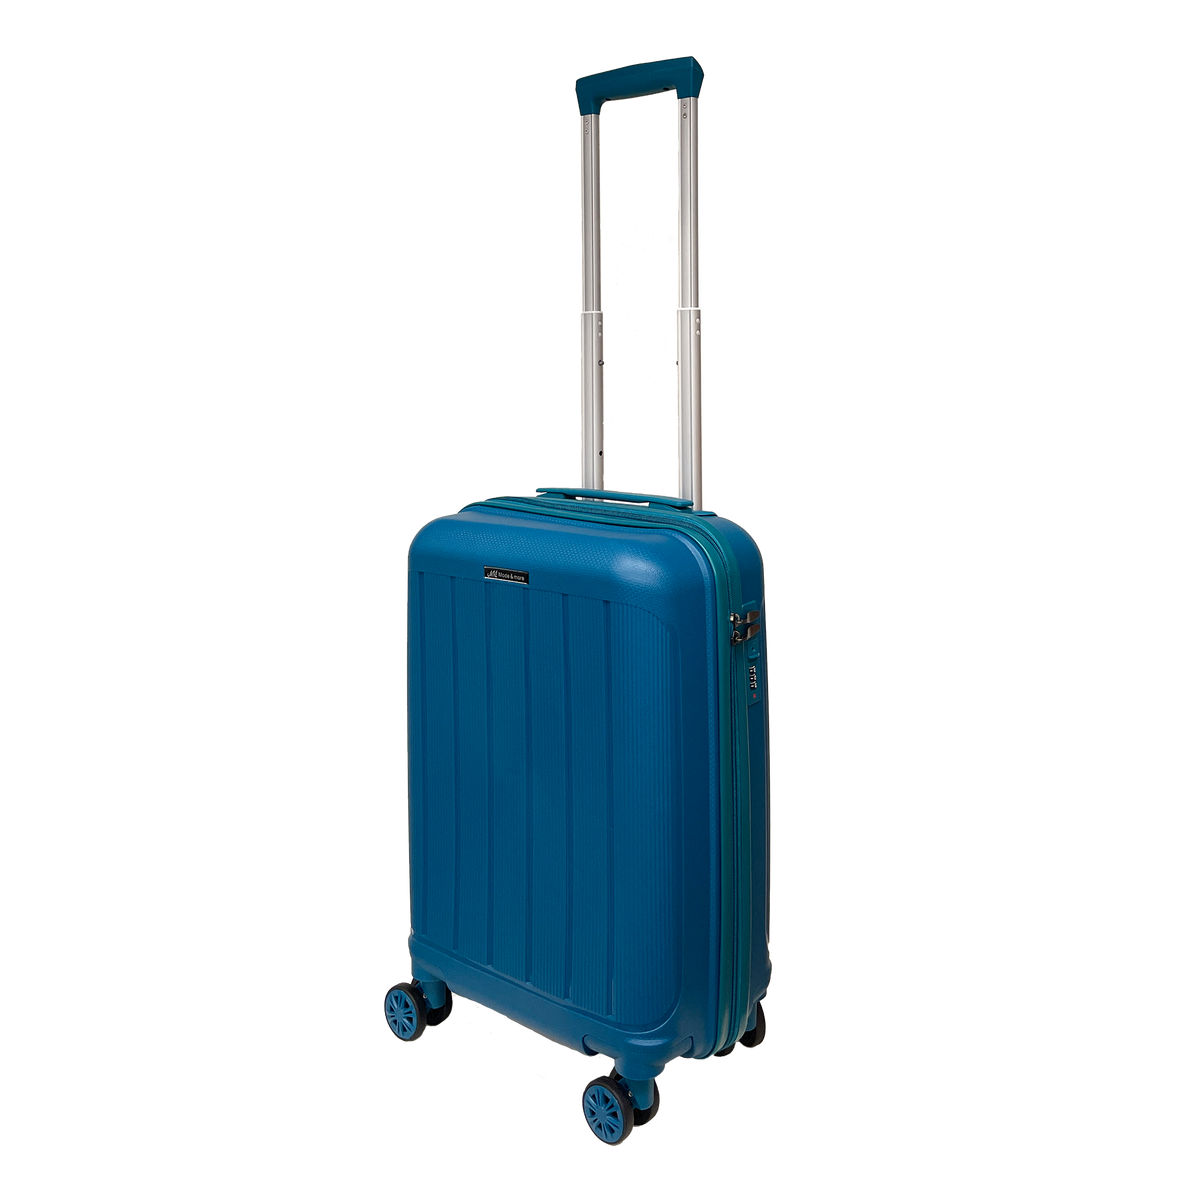 Handgepäck aus leichtem, weichem Polypropylen 55x36x25cm mit TSA-Schloss und hochwertigem, ultraleichtem Trolley